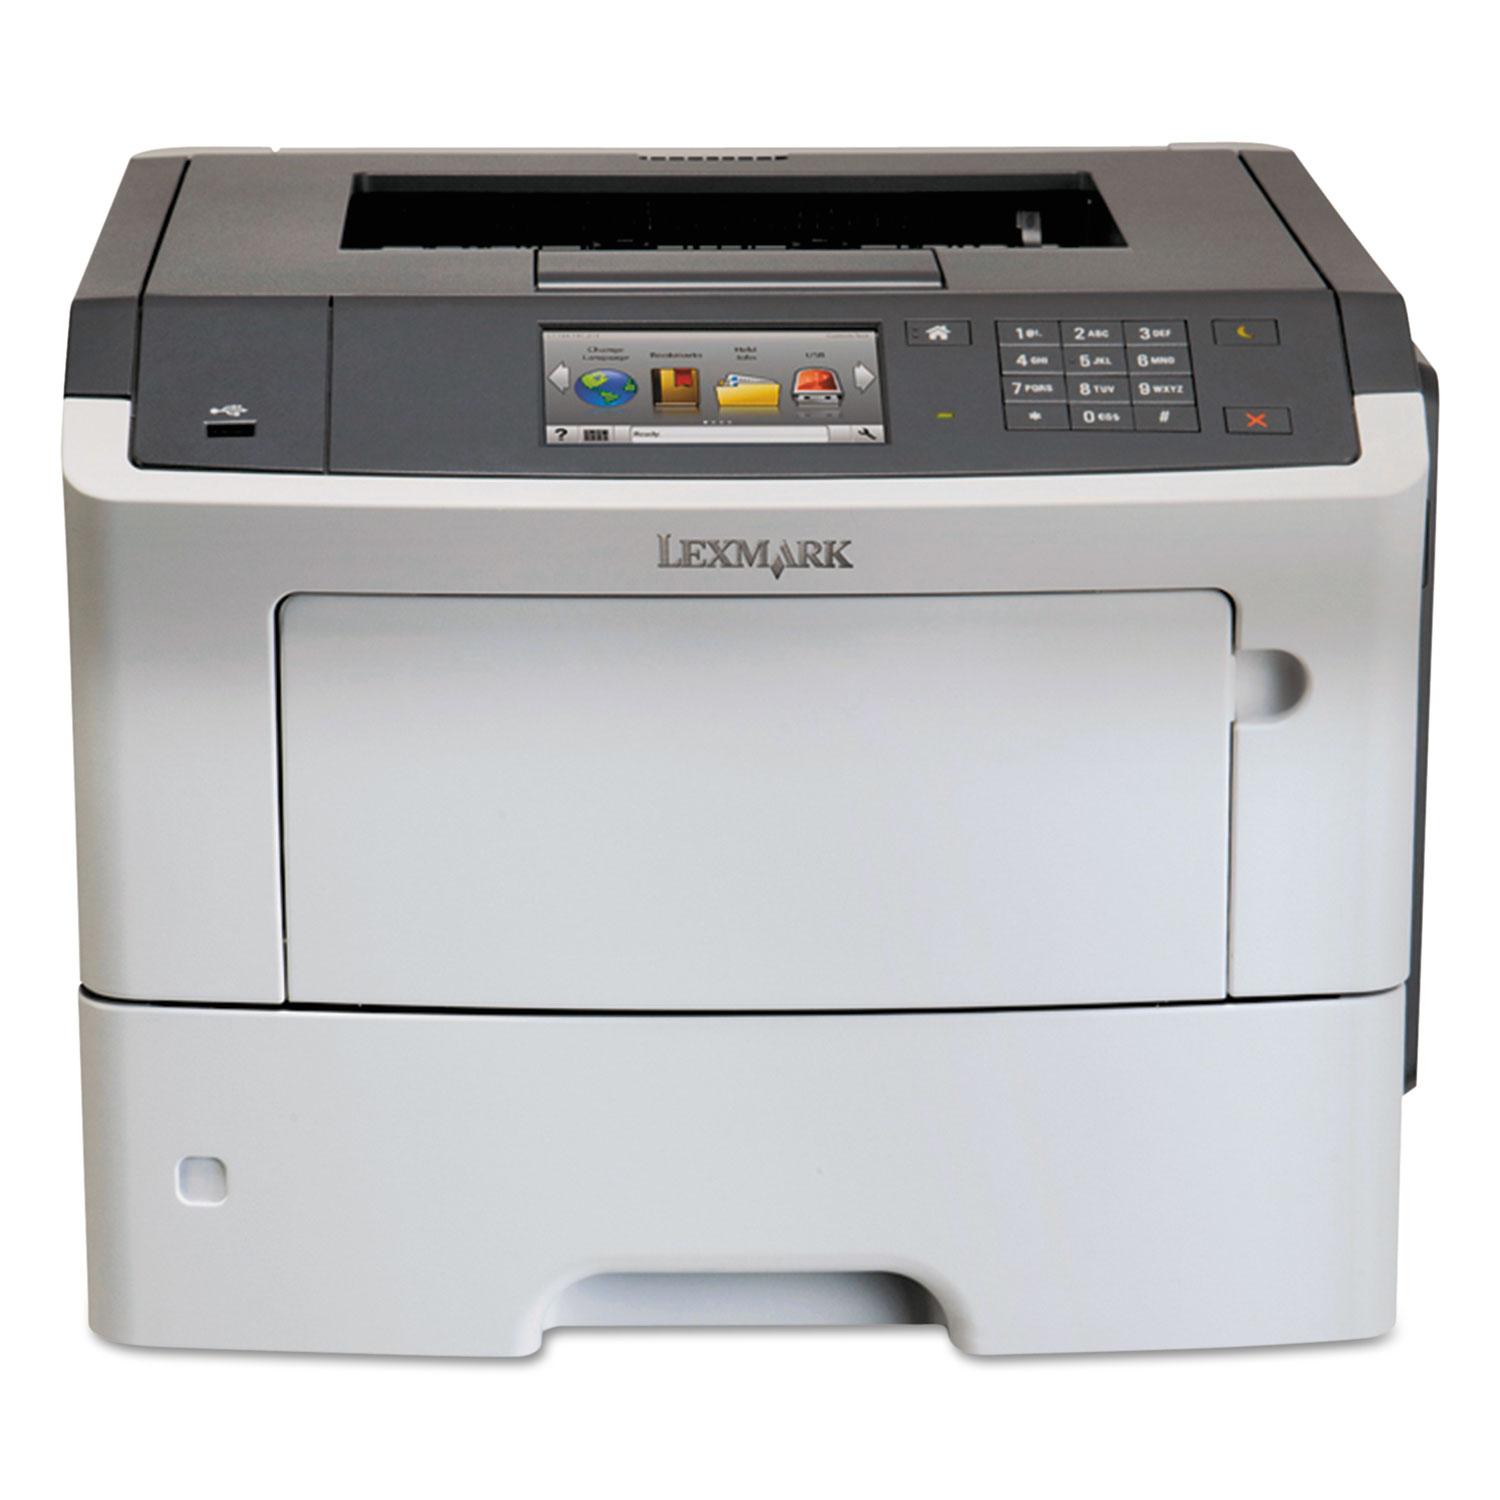 MS610de Laser Printer